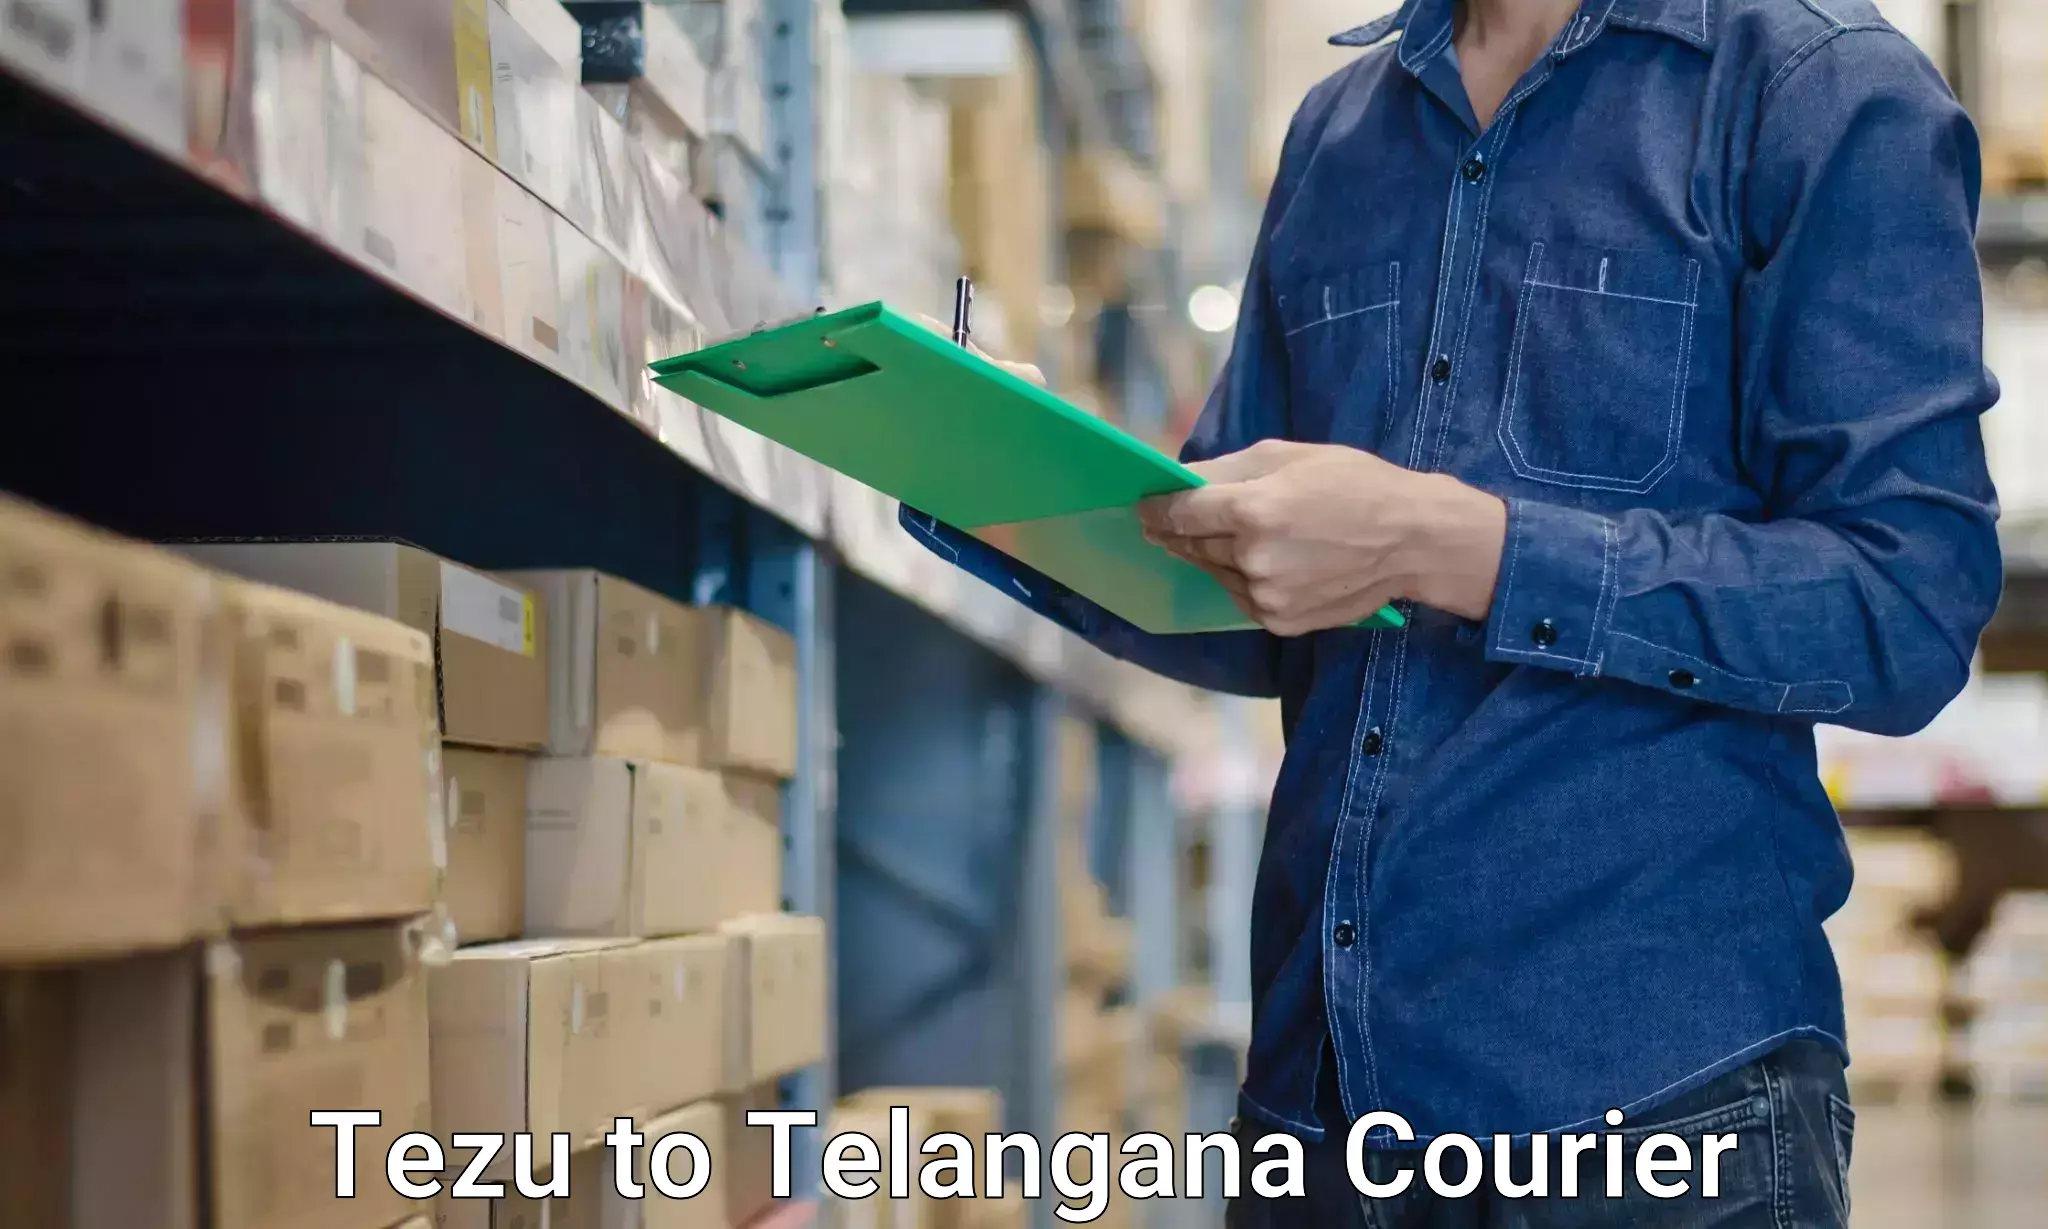 Furniture transport solutions Tezu to Manuguru